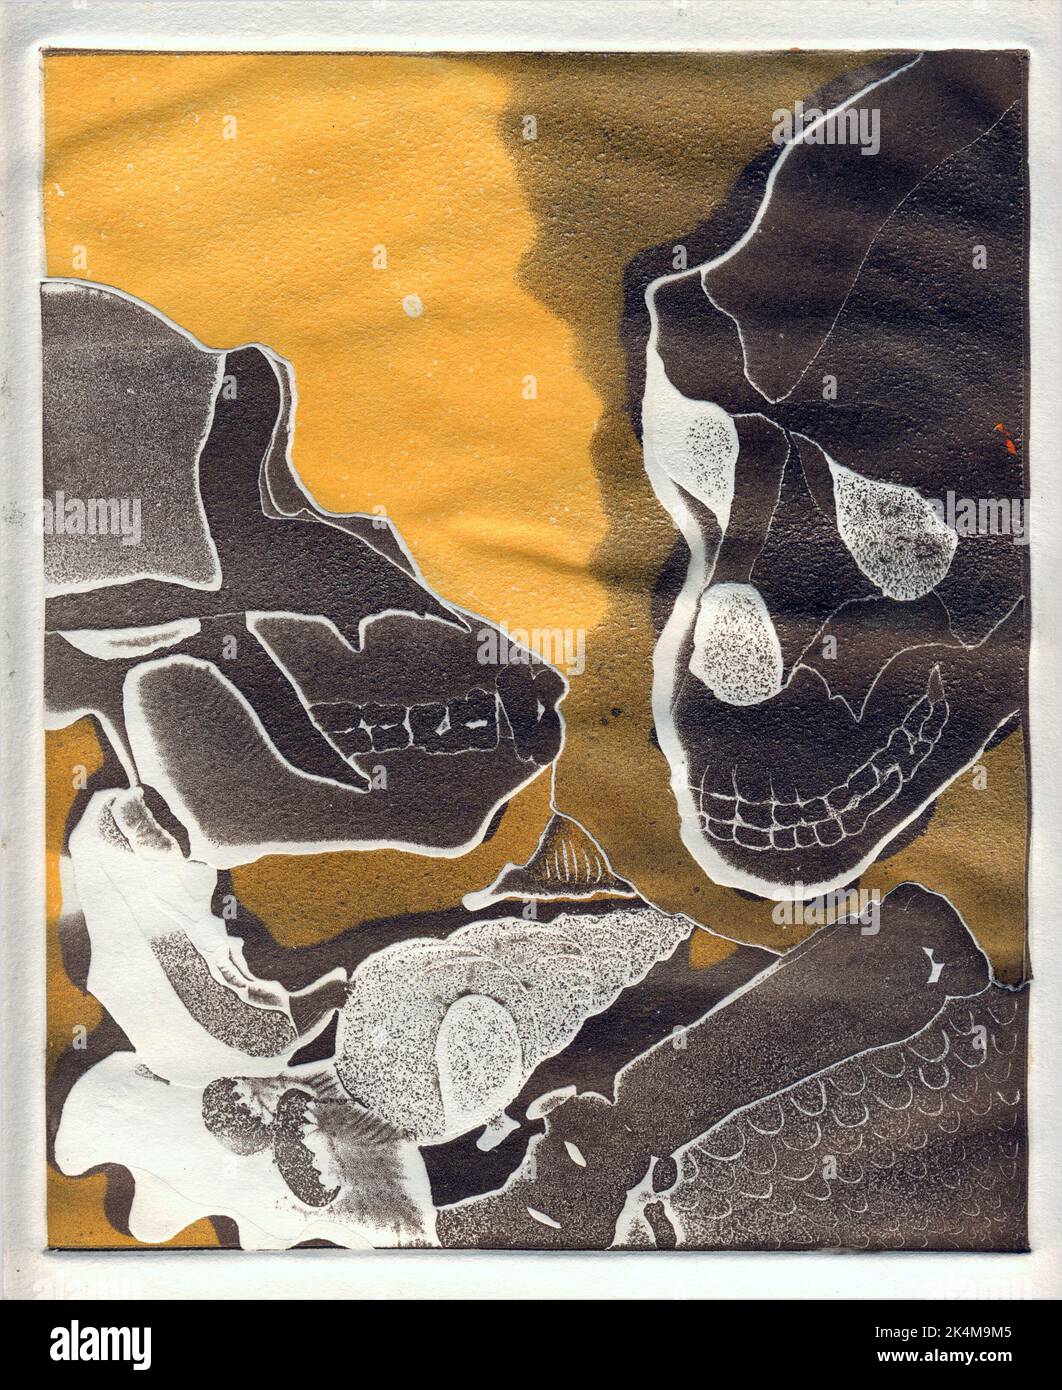 1 de 4 grabados que muestran dos cráneos gorila/ homínidos, adecuados para la revista editorial de portadas de libros, evolución, biología, zoología, historia, antropología. Foto de stock